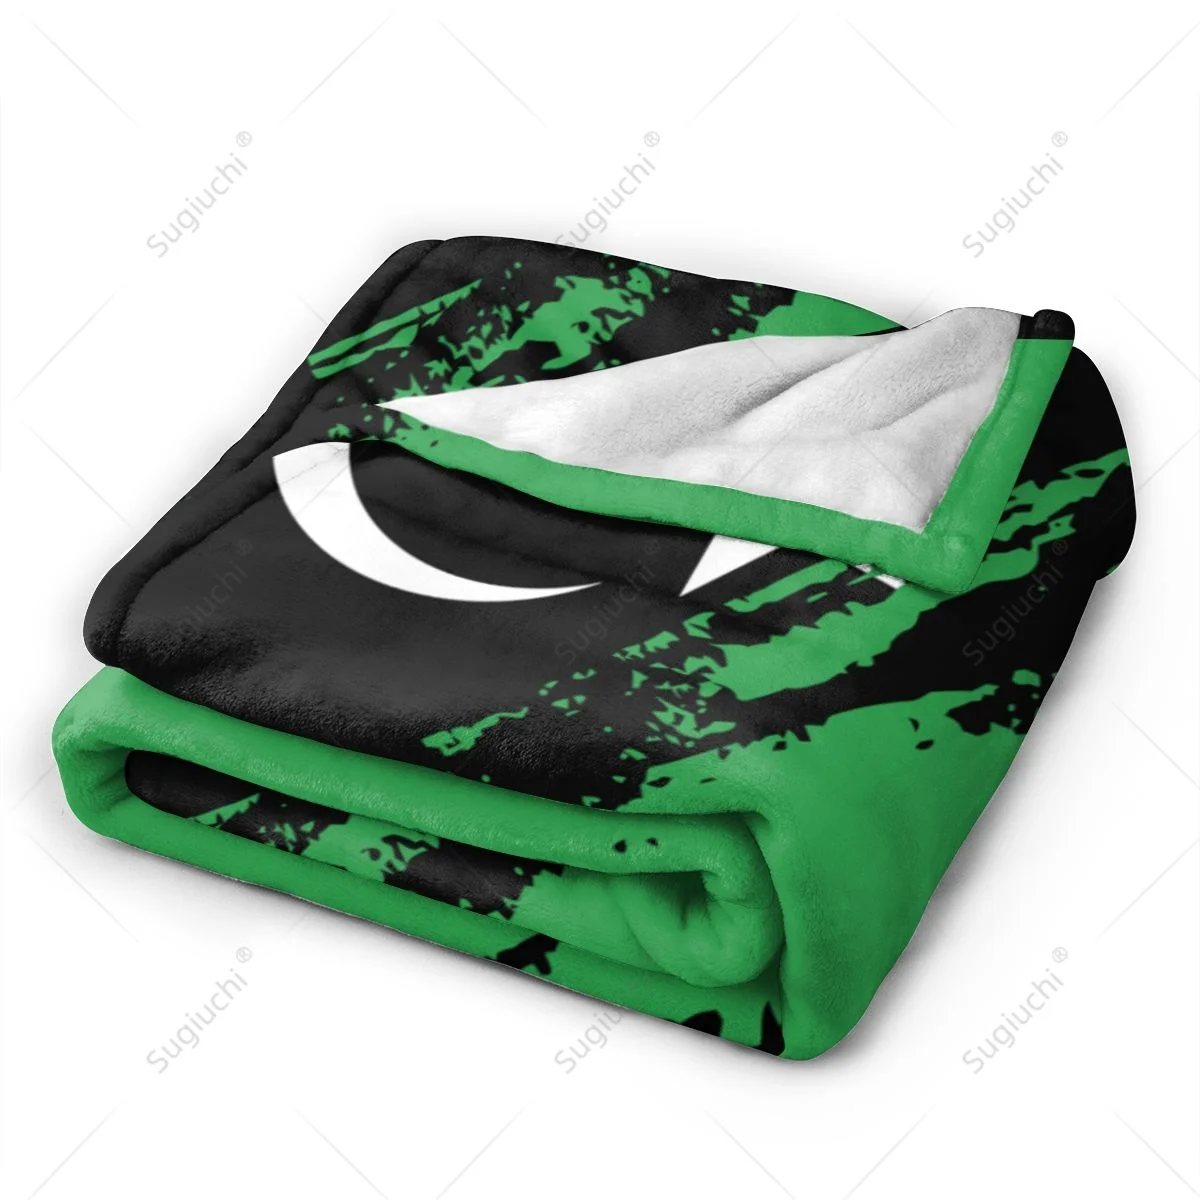 Фланелевое одеяло цвета Флага Ливии, Многофункциональный чехол для кемпингового дивана, сохраняющий тепло